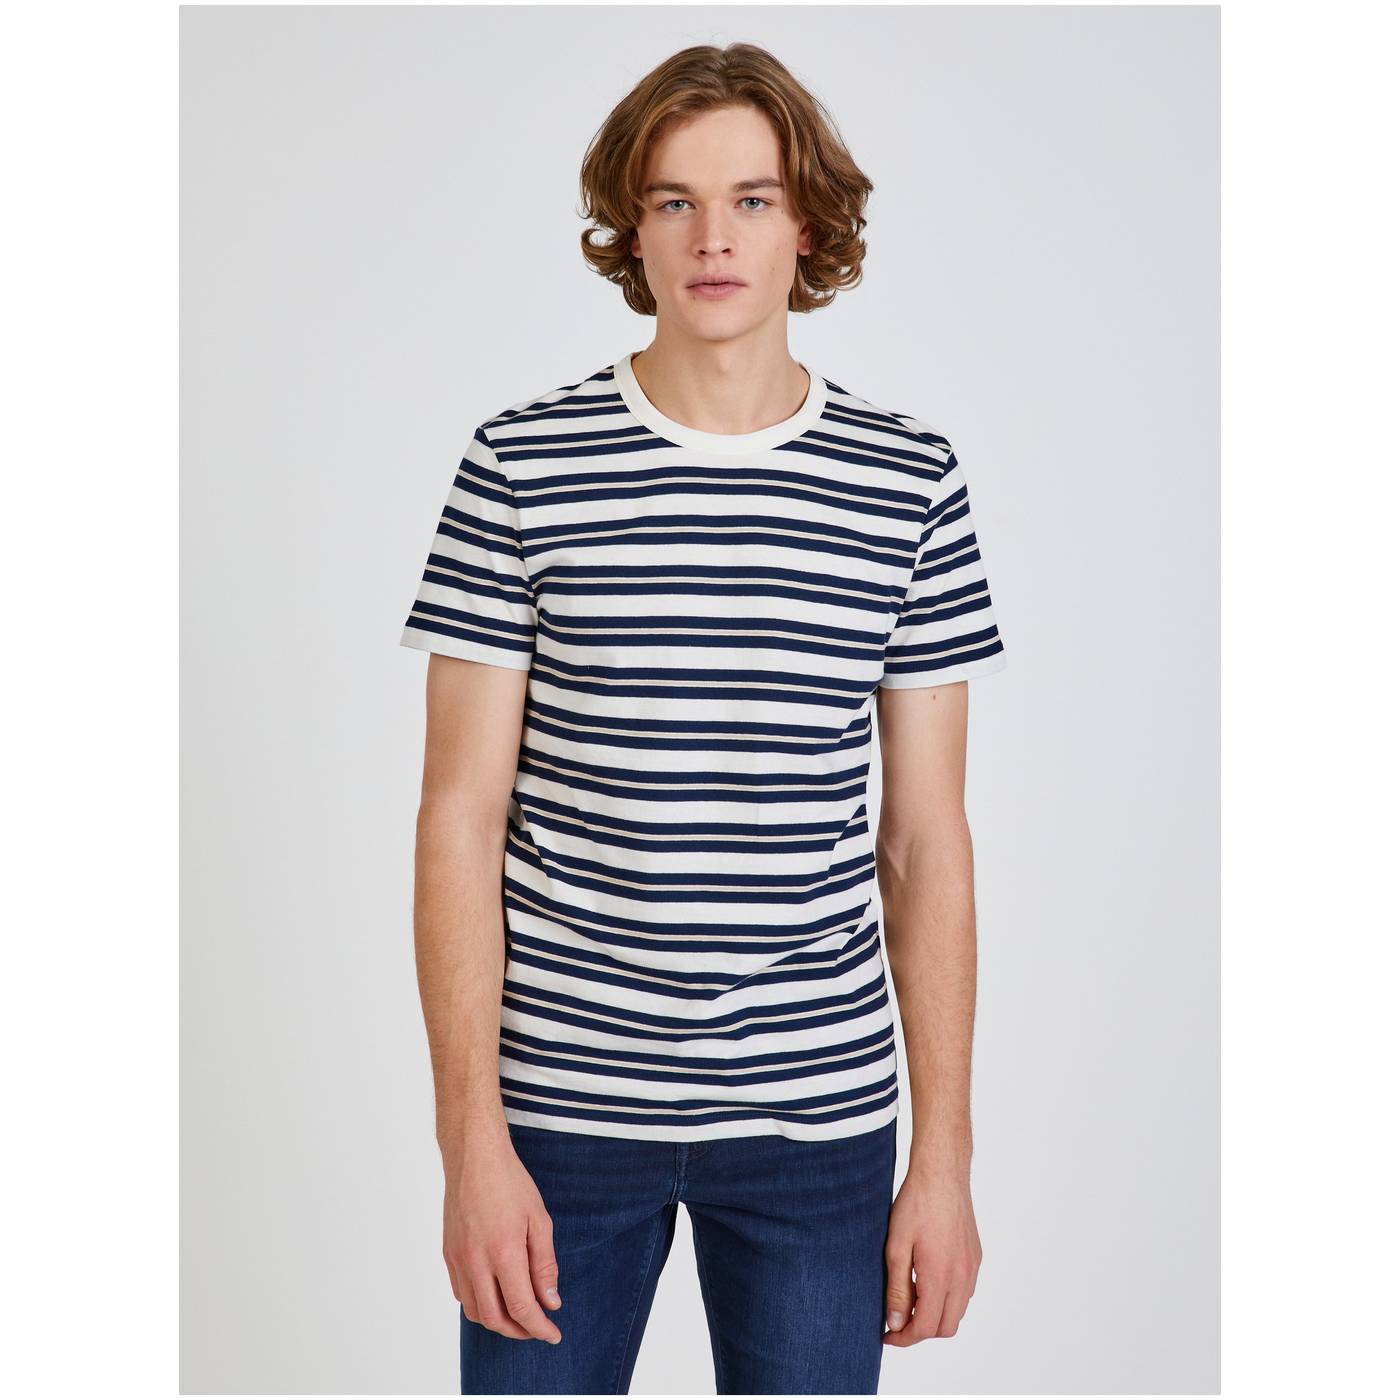 Blue-White Men's Striped T-Shirt Tom Tailor Denim - Men's